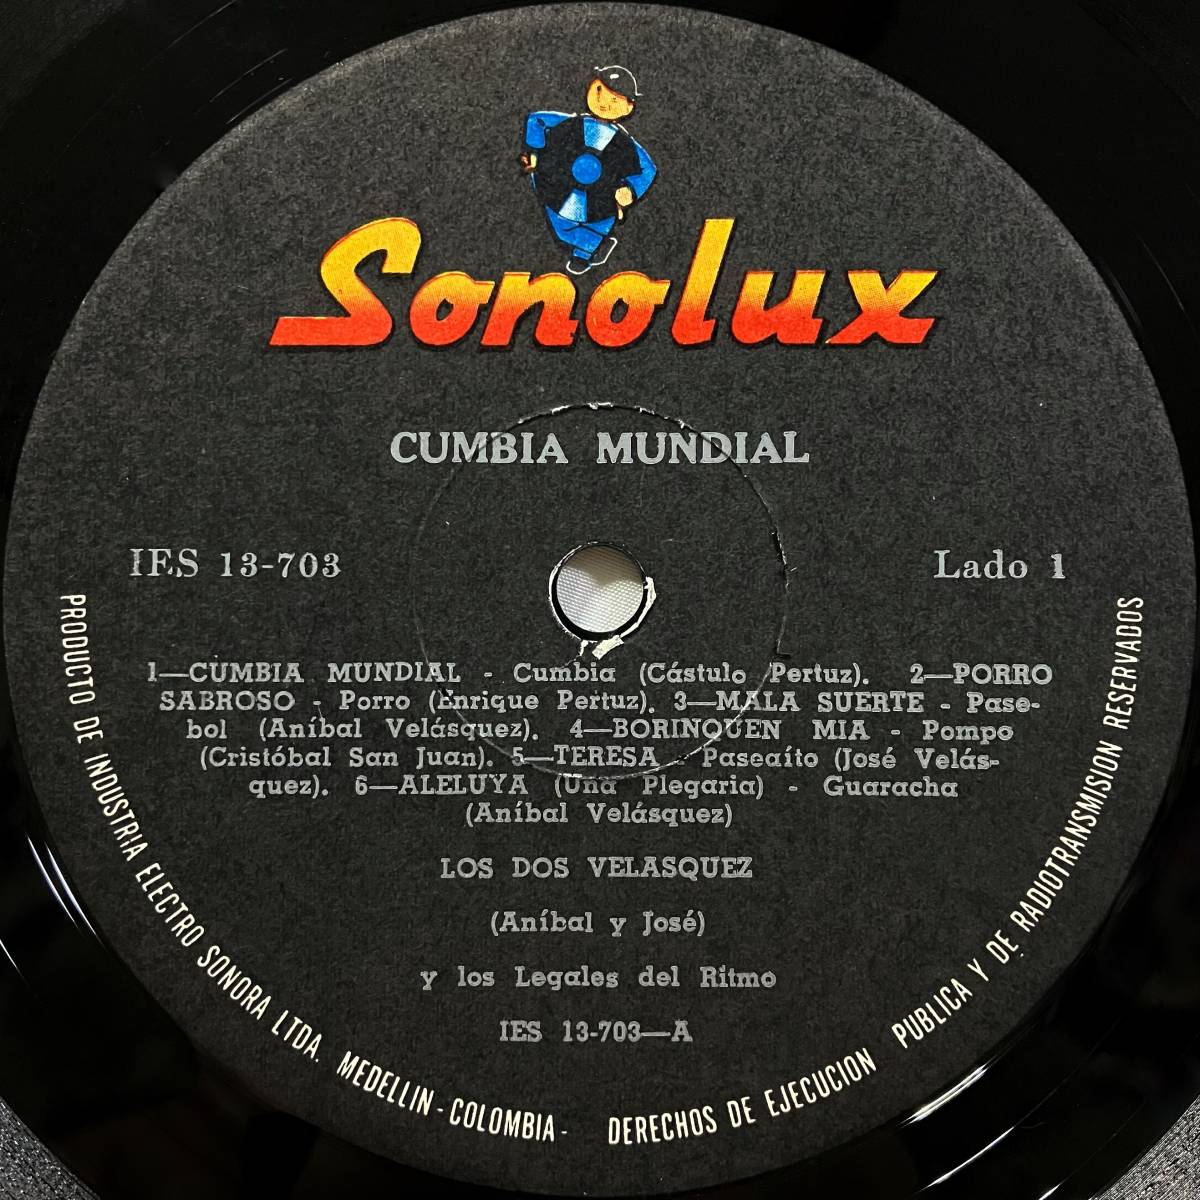  прослушивание!60 годы Colombia латиноамериканский редкий запись Anibal Velasquez родственная LOS DOS VELASQUEZ / CUMBIA MUNDIAL (SONOLUX) латиноамериканский kn Via latin cumbia